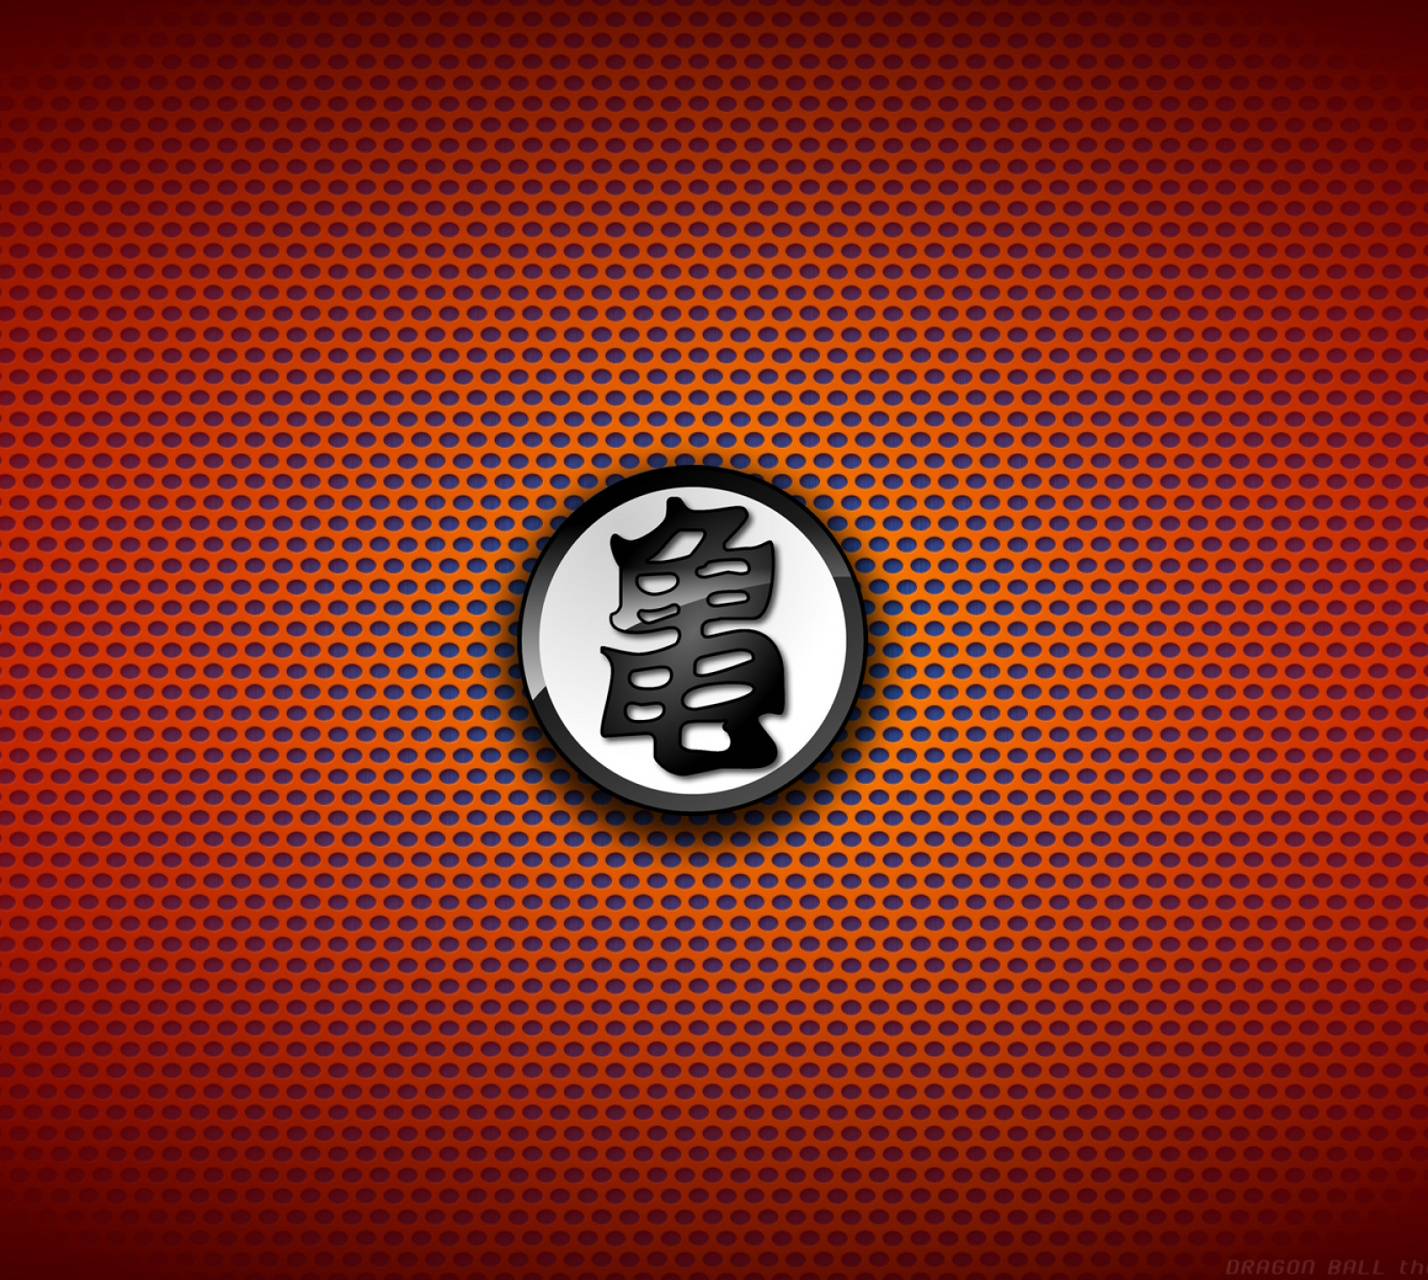 Kame Logo - logo kame Wallpaper by moisesper - e8 - Free on ZEDGE™